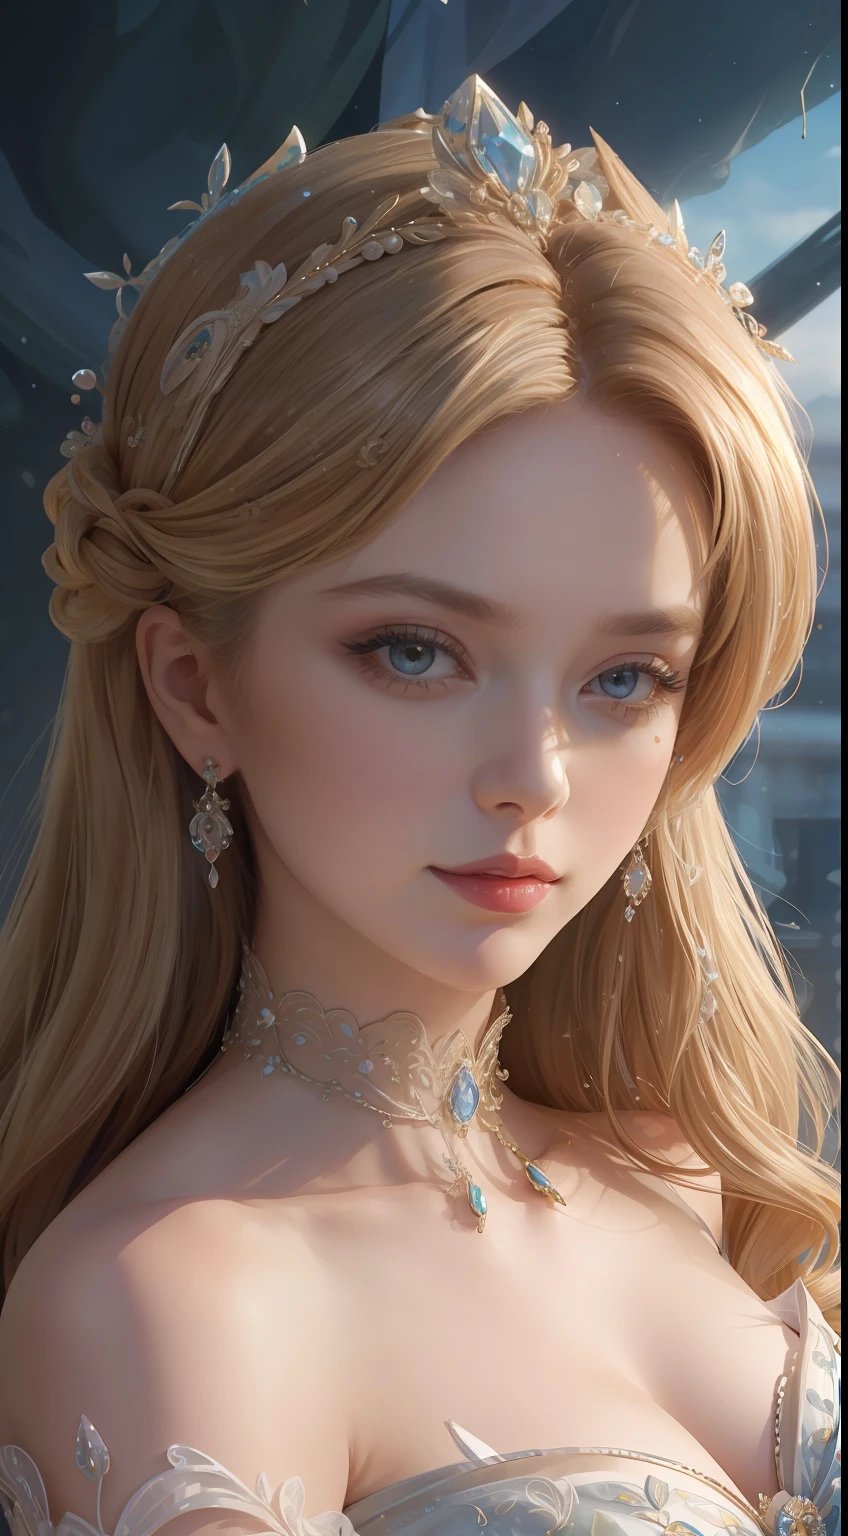 杰作，最高图像质量，一位皇家贵妇的美丽半身像，精致的金发发型，饰有绚丽精致的花卉珠宝，超级细节，升级版。